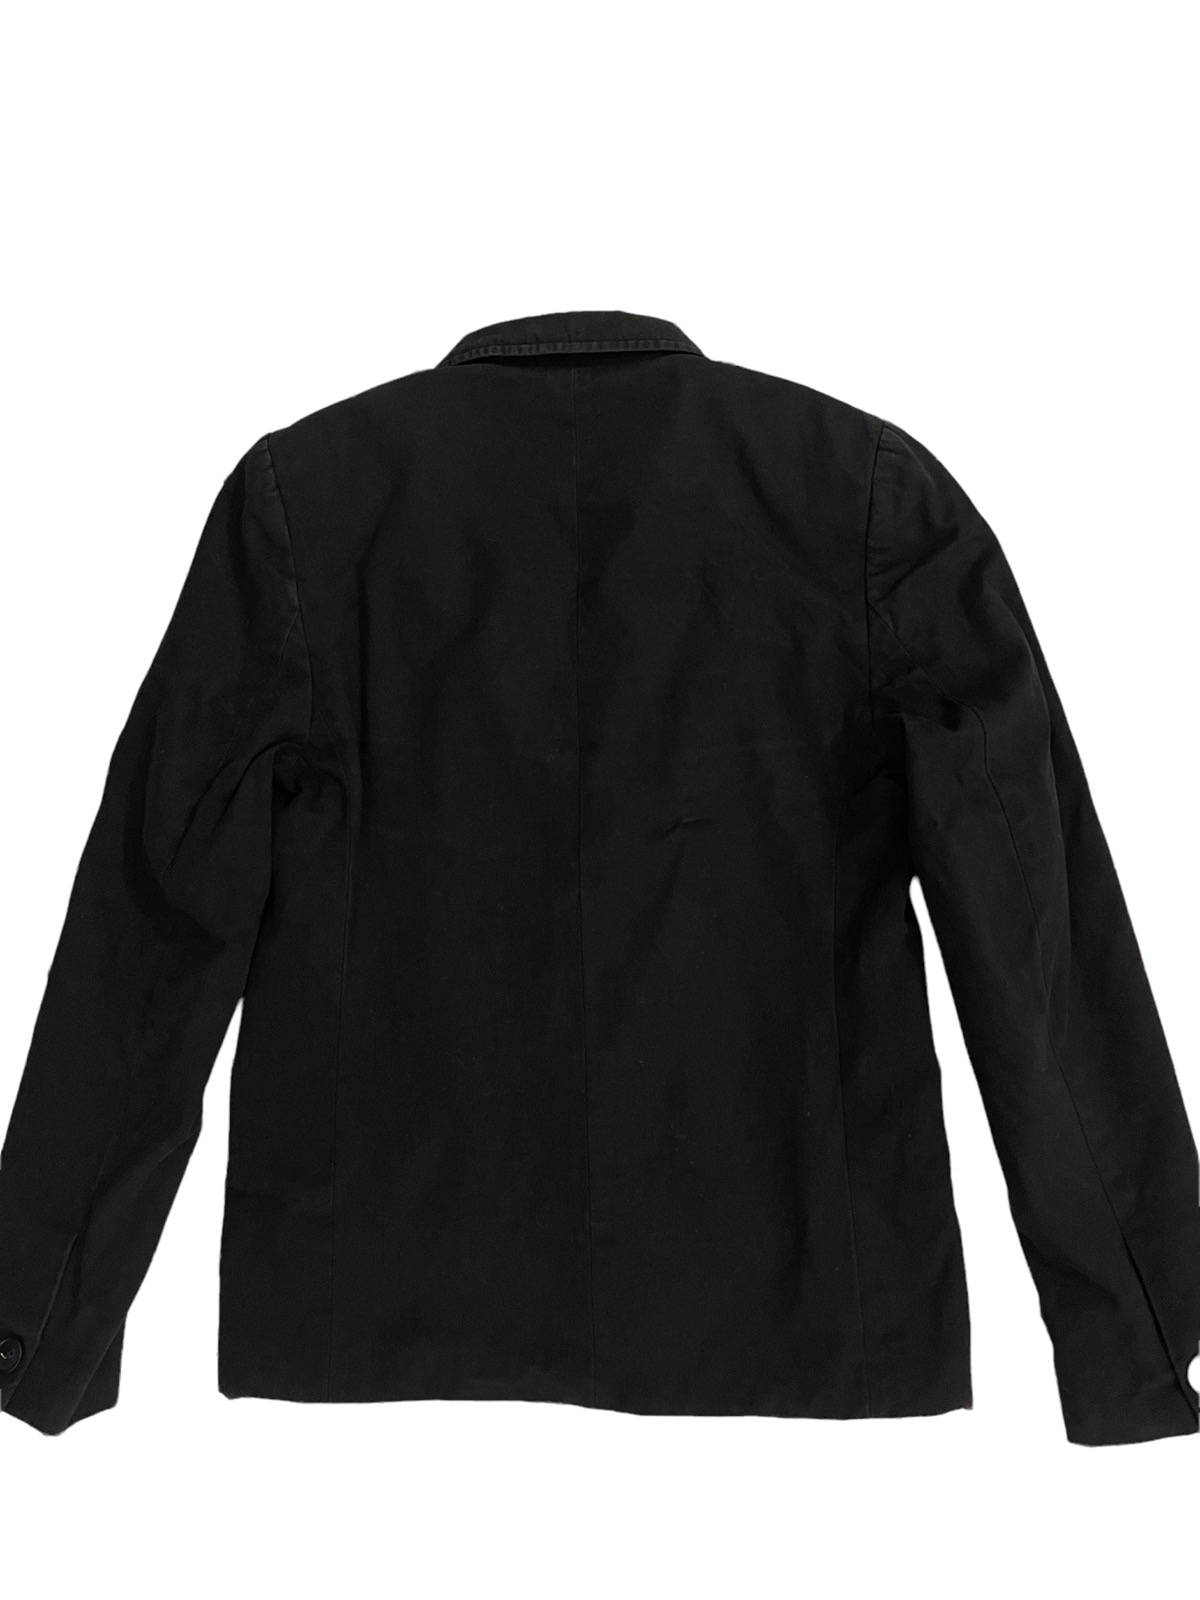 apc jacket - 5